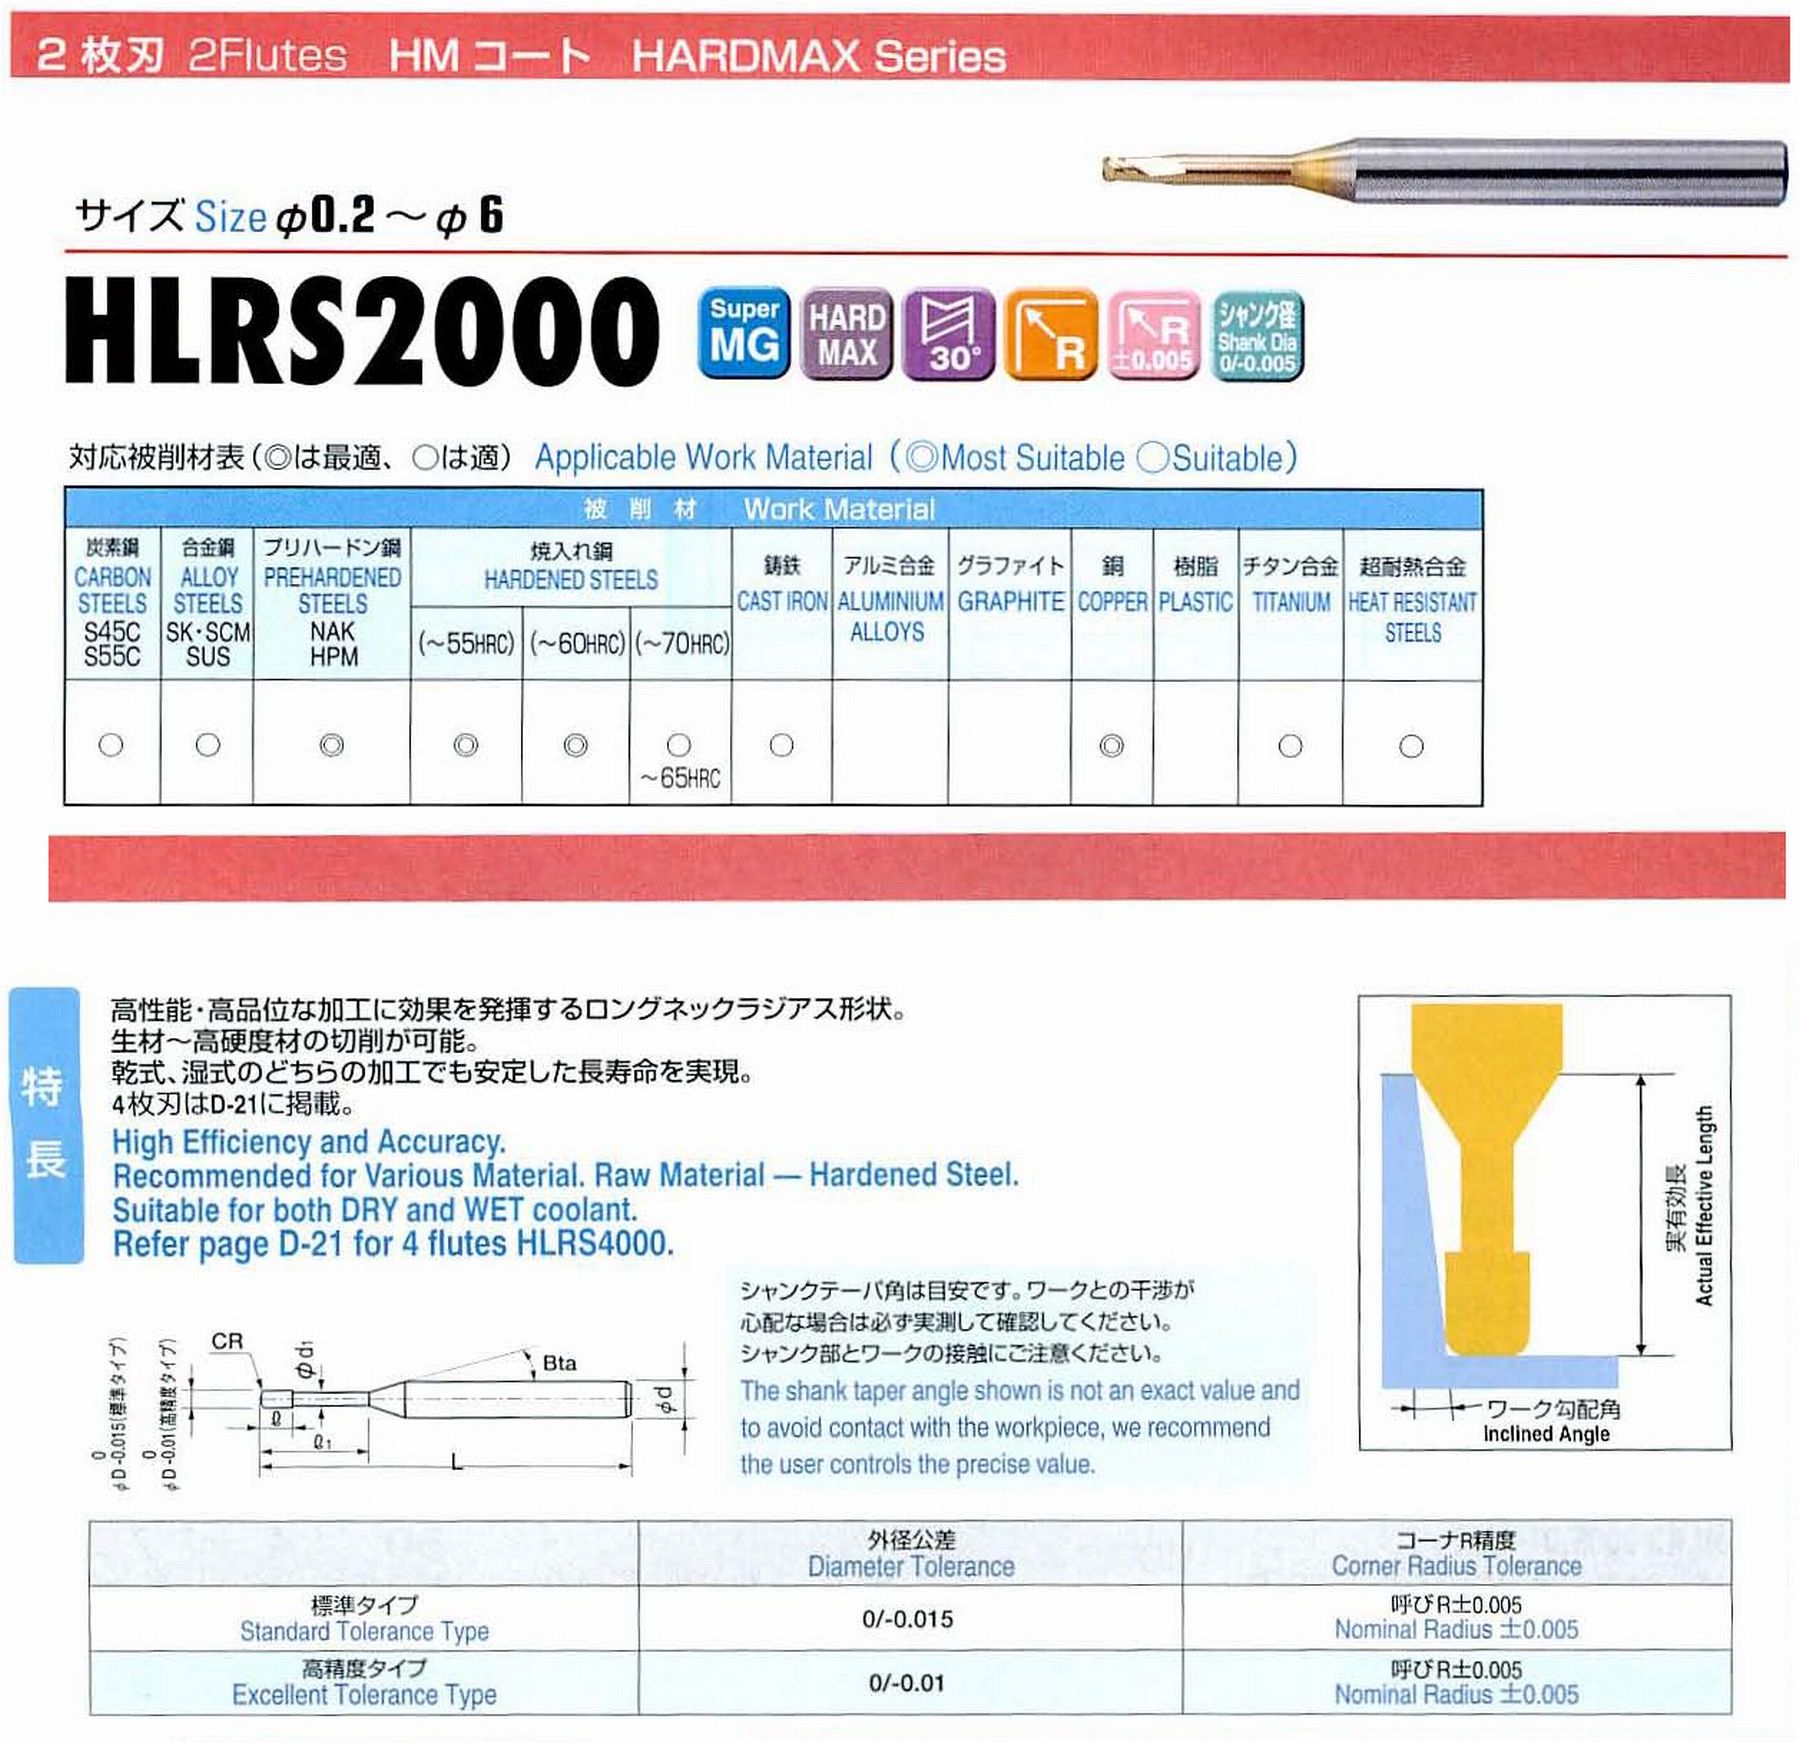 ユニオンツール 2枚刃 HLRS2015-01-200 外径1.5 コーナ半径R0.1 有効長20 刃長1.5 首径1.45 シャンクテーパ角16° 全長60 シャンク径4